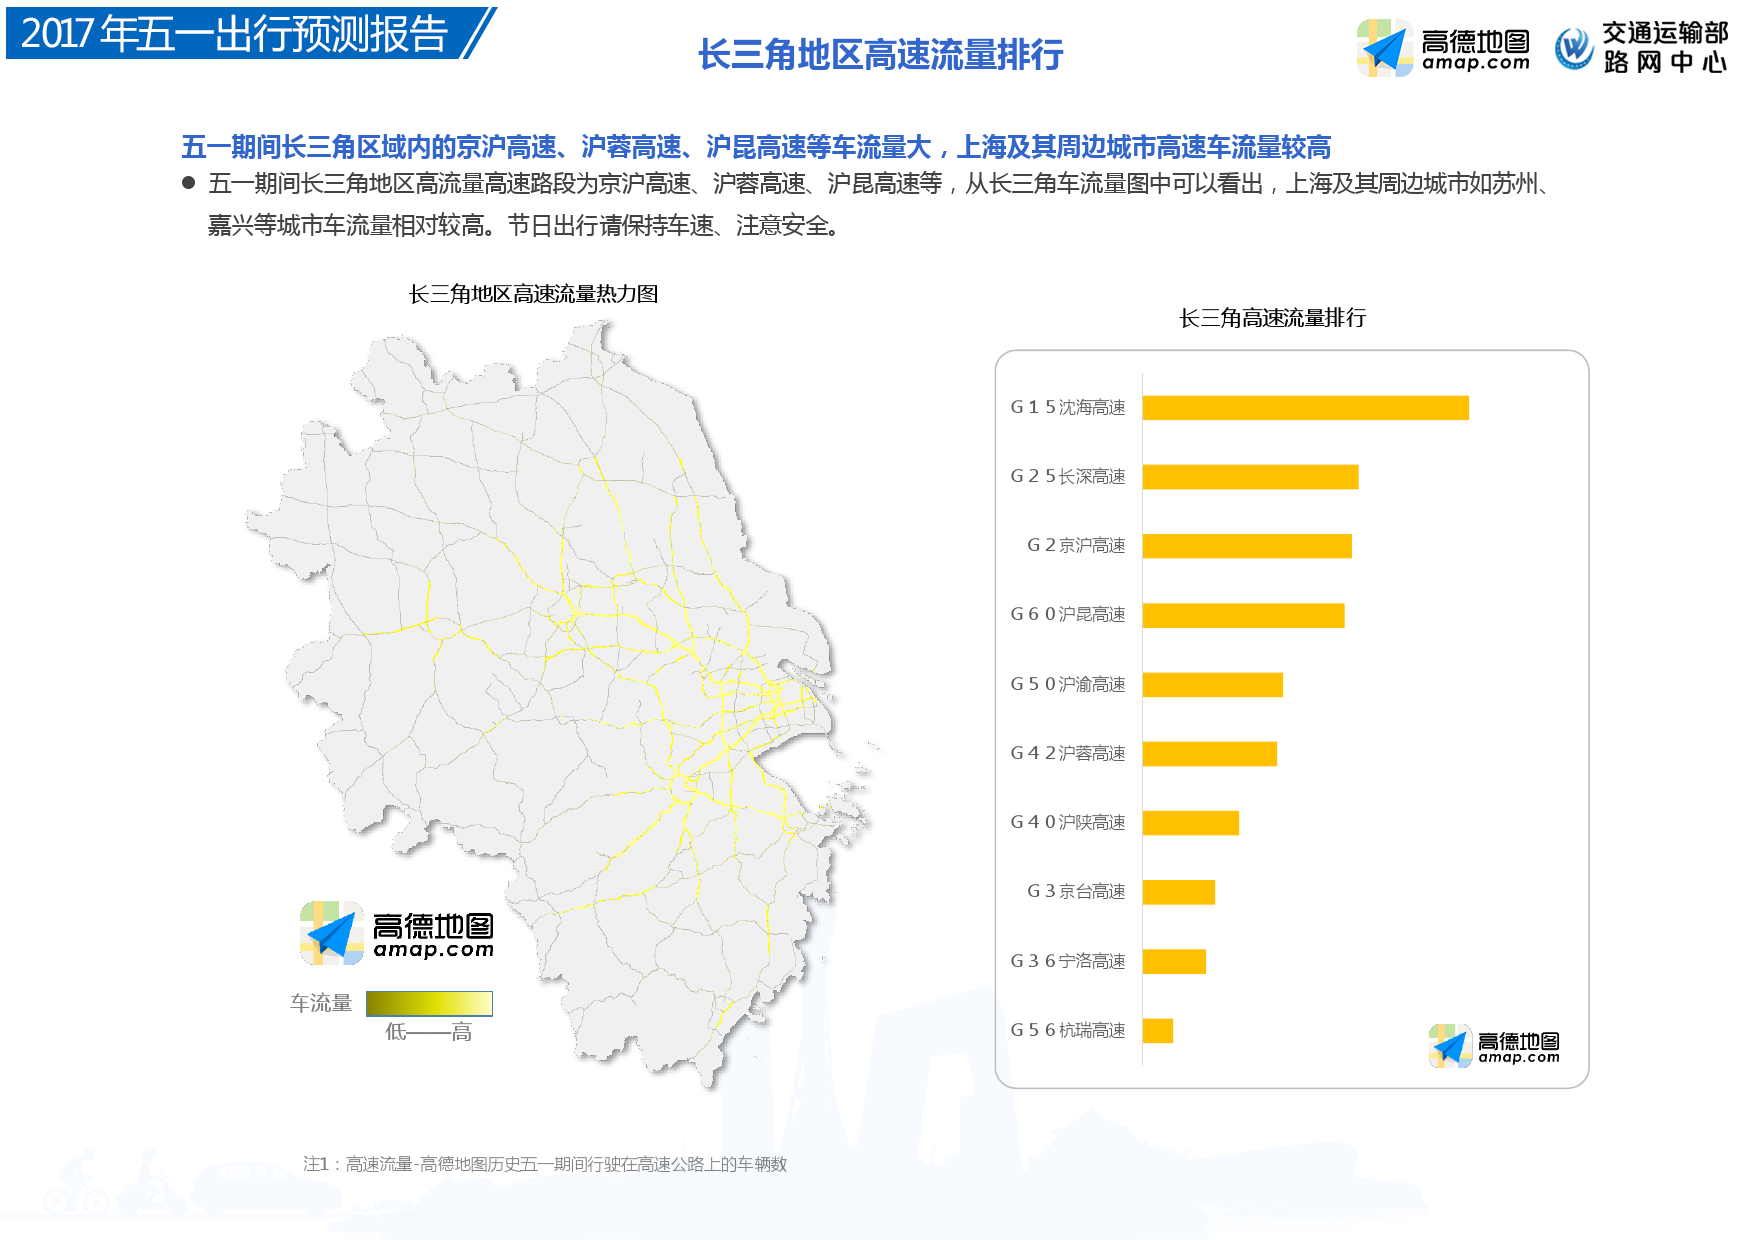 高德地图五一出行预测数据报告:东莞深圳北京高速最拥堵-中商情报网